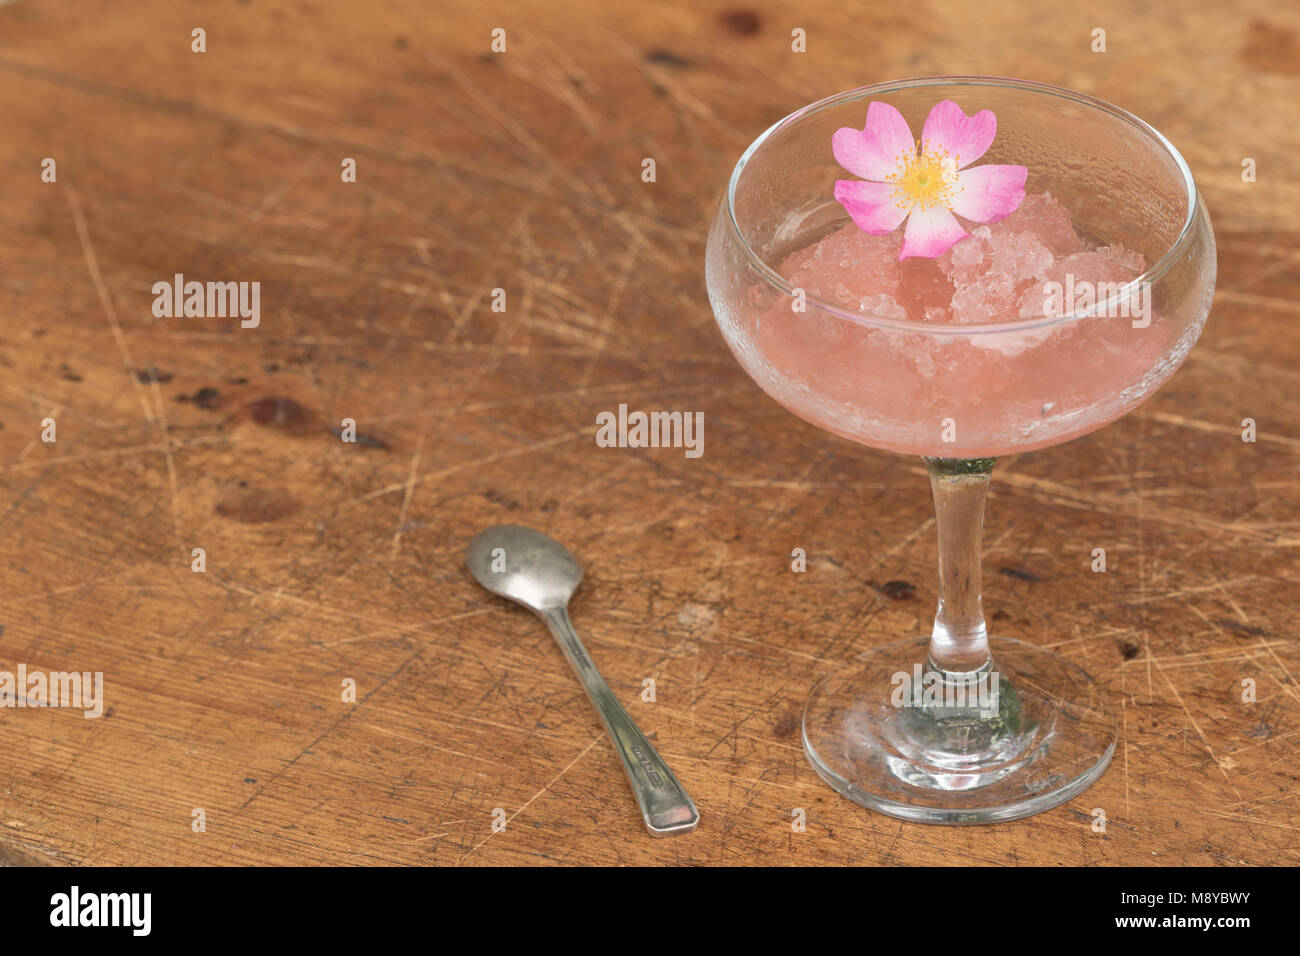 Vin rose congelé dans un verre avec une cuillère à dessert et pétales de rose biologique Banque D'Images